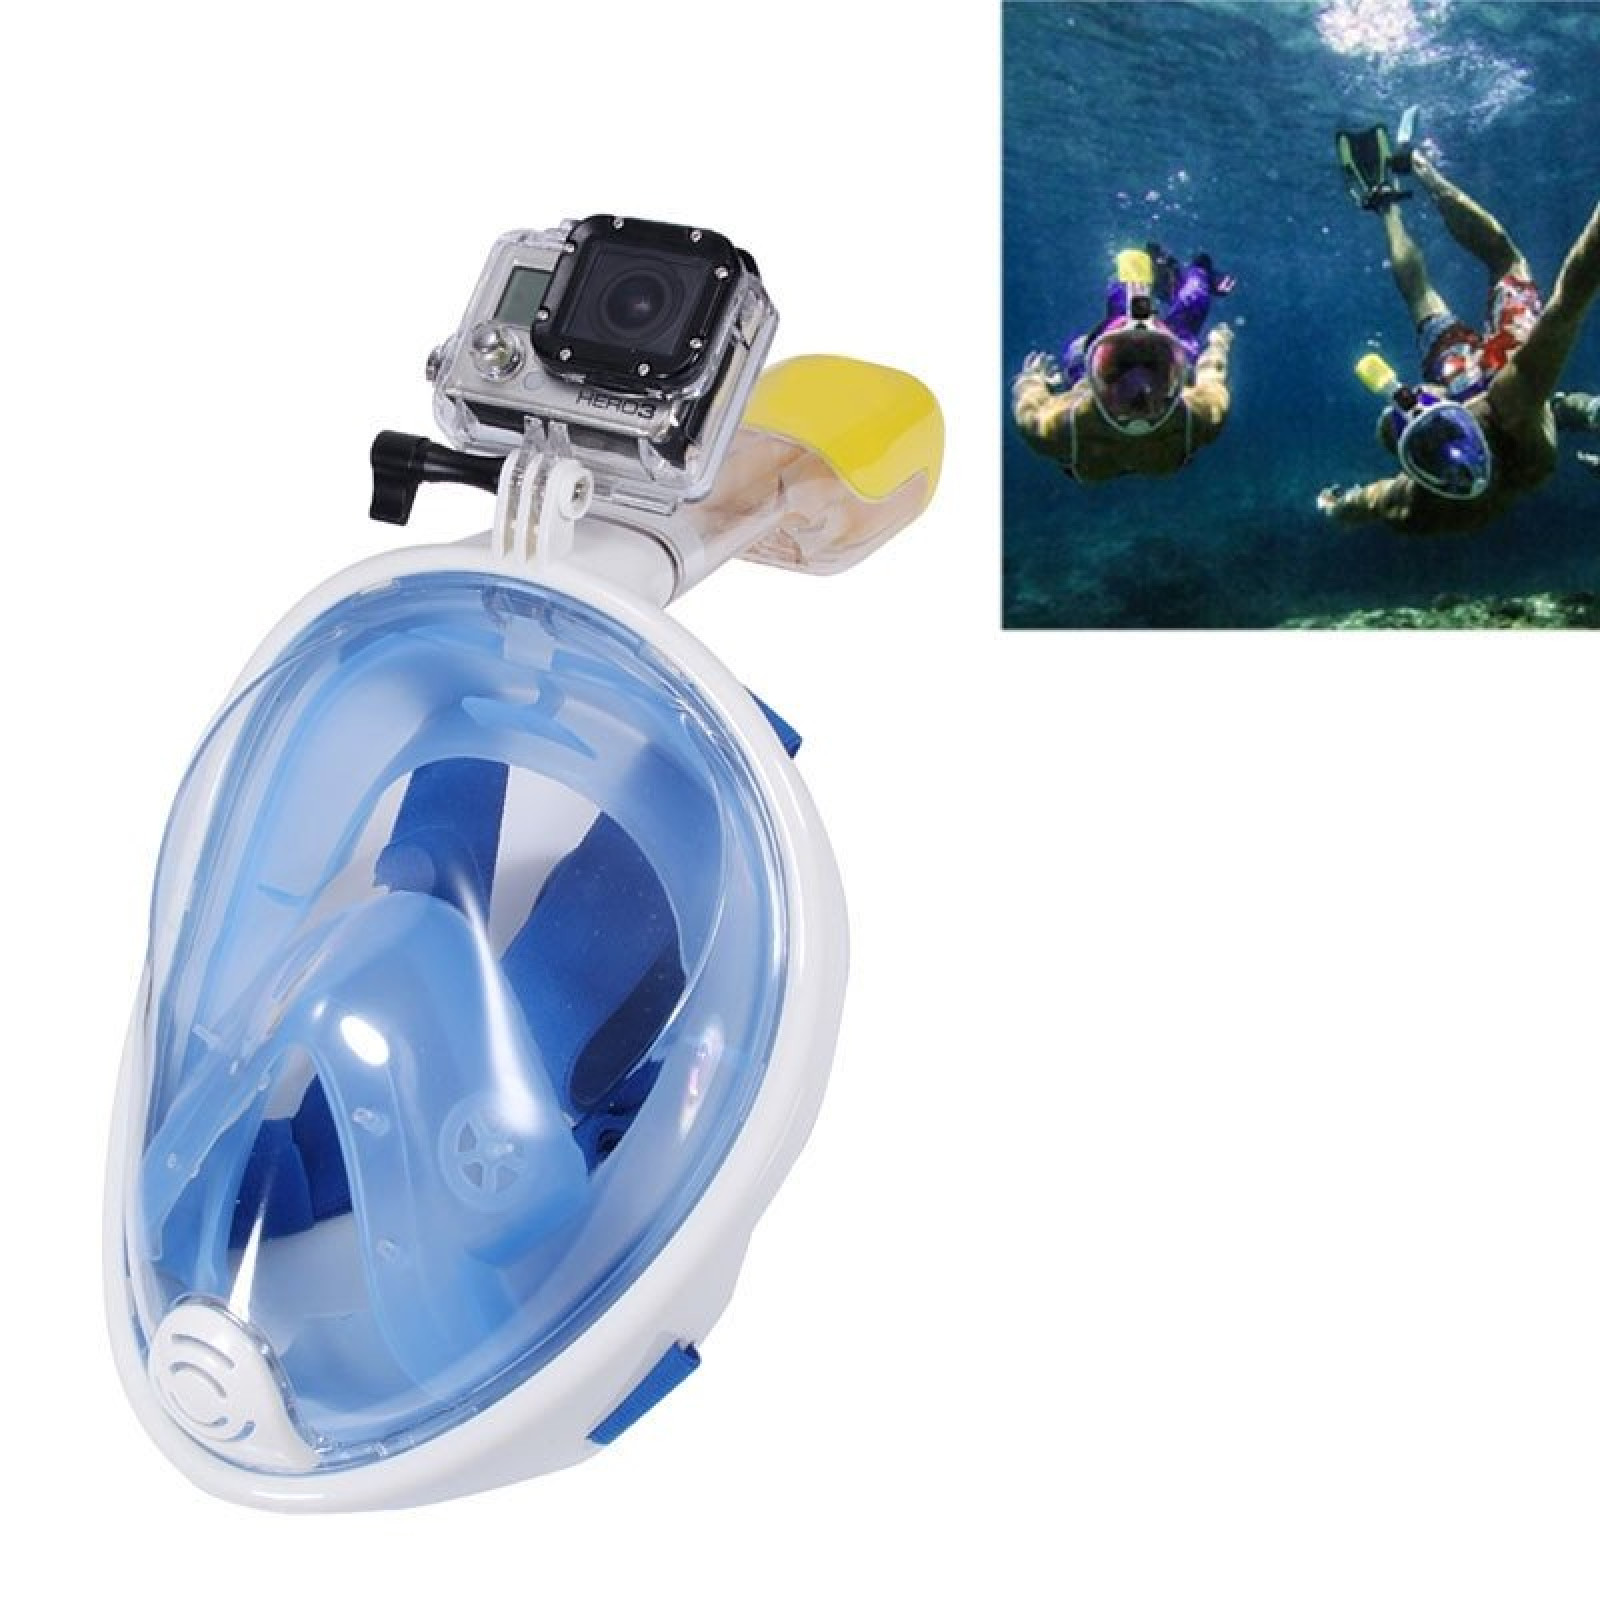 Маска для дайвинга снорклинга Free Easybreath для подводного плавания c креплением для камеры GoPro голубая L/XL 148982